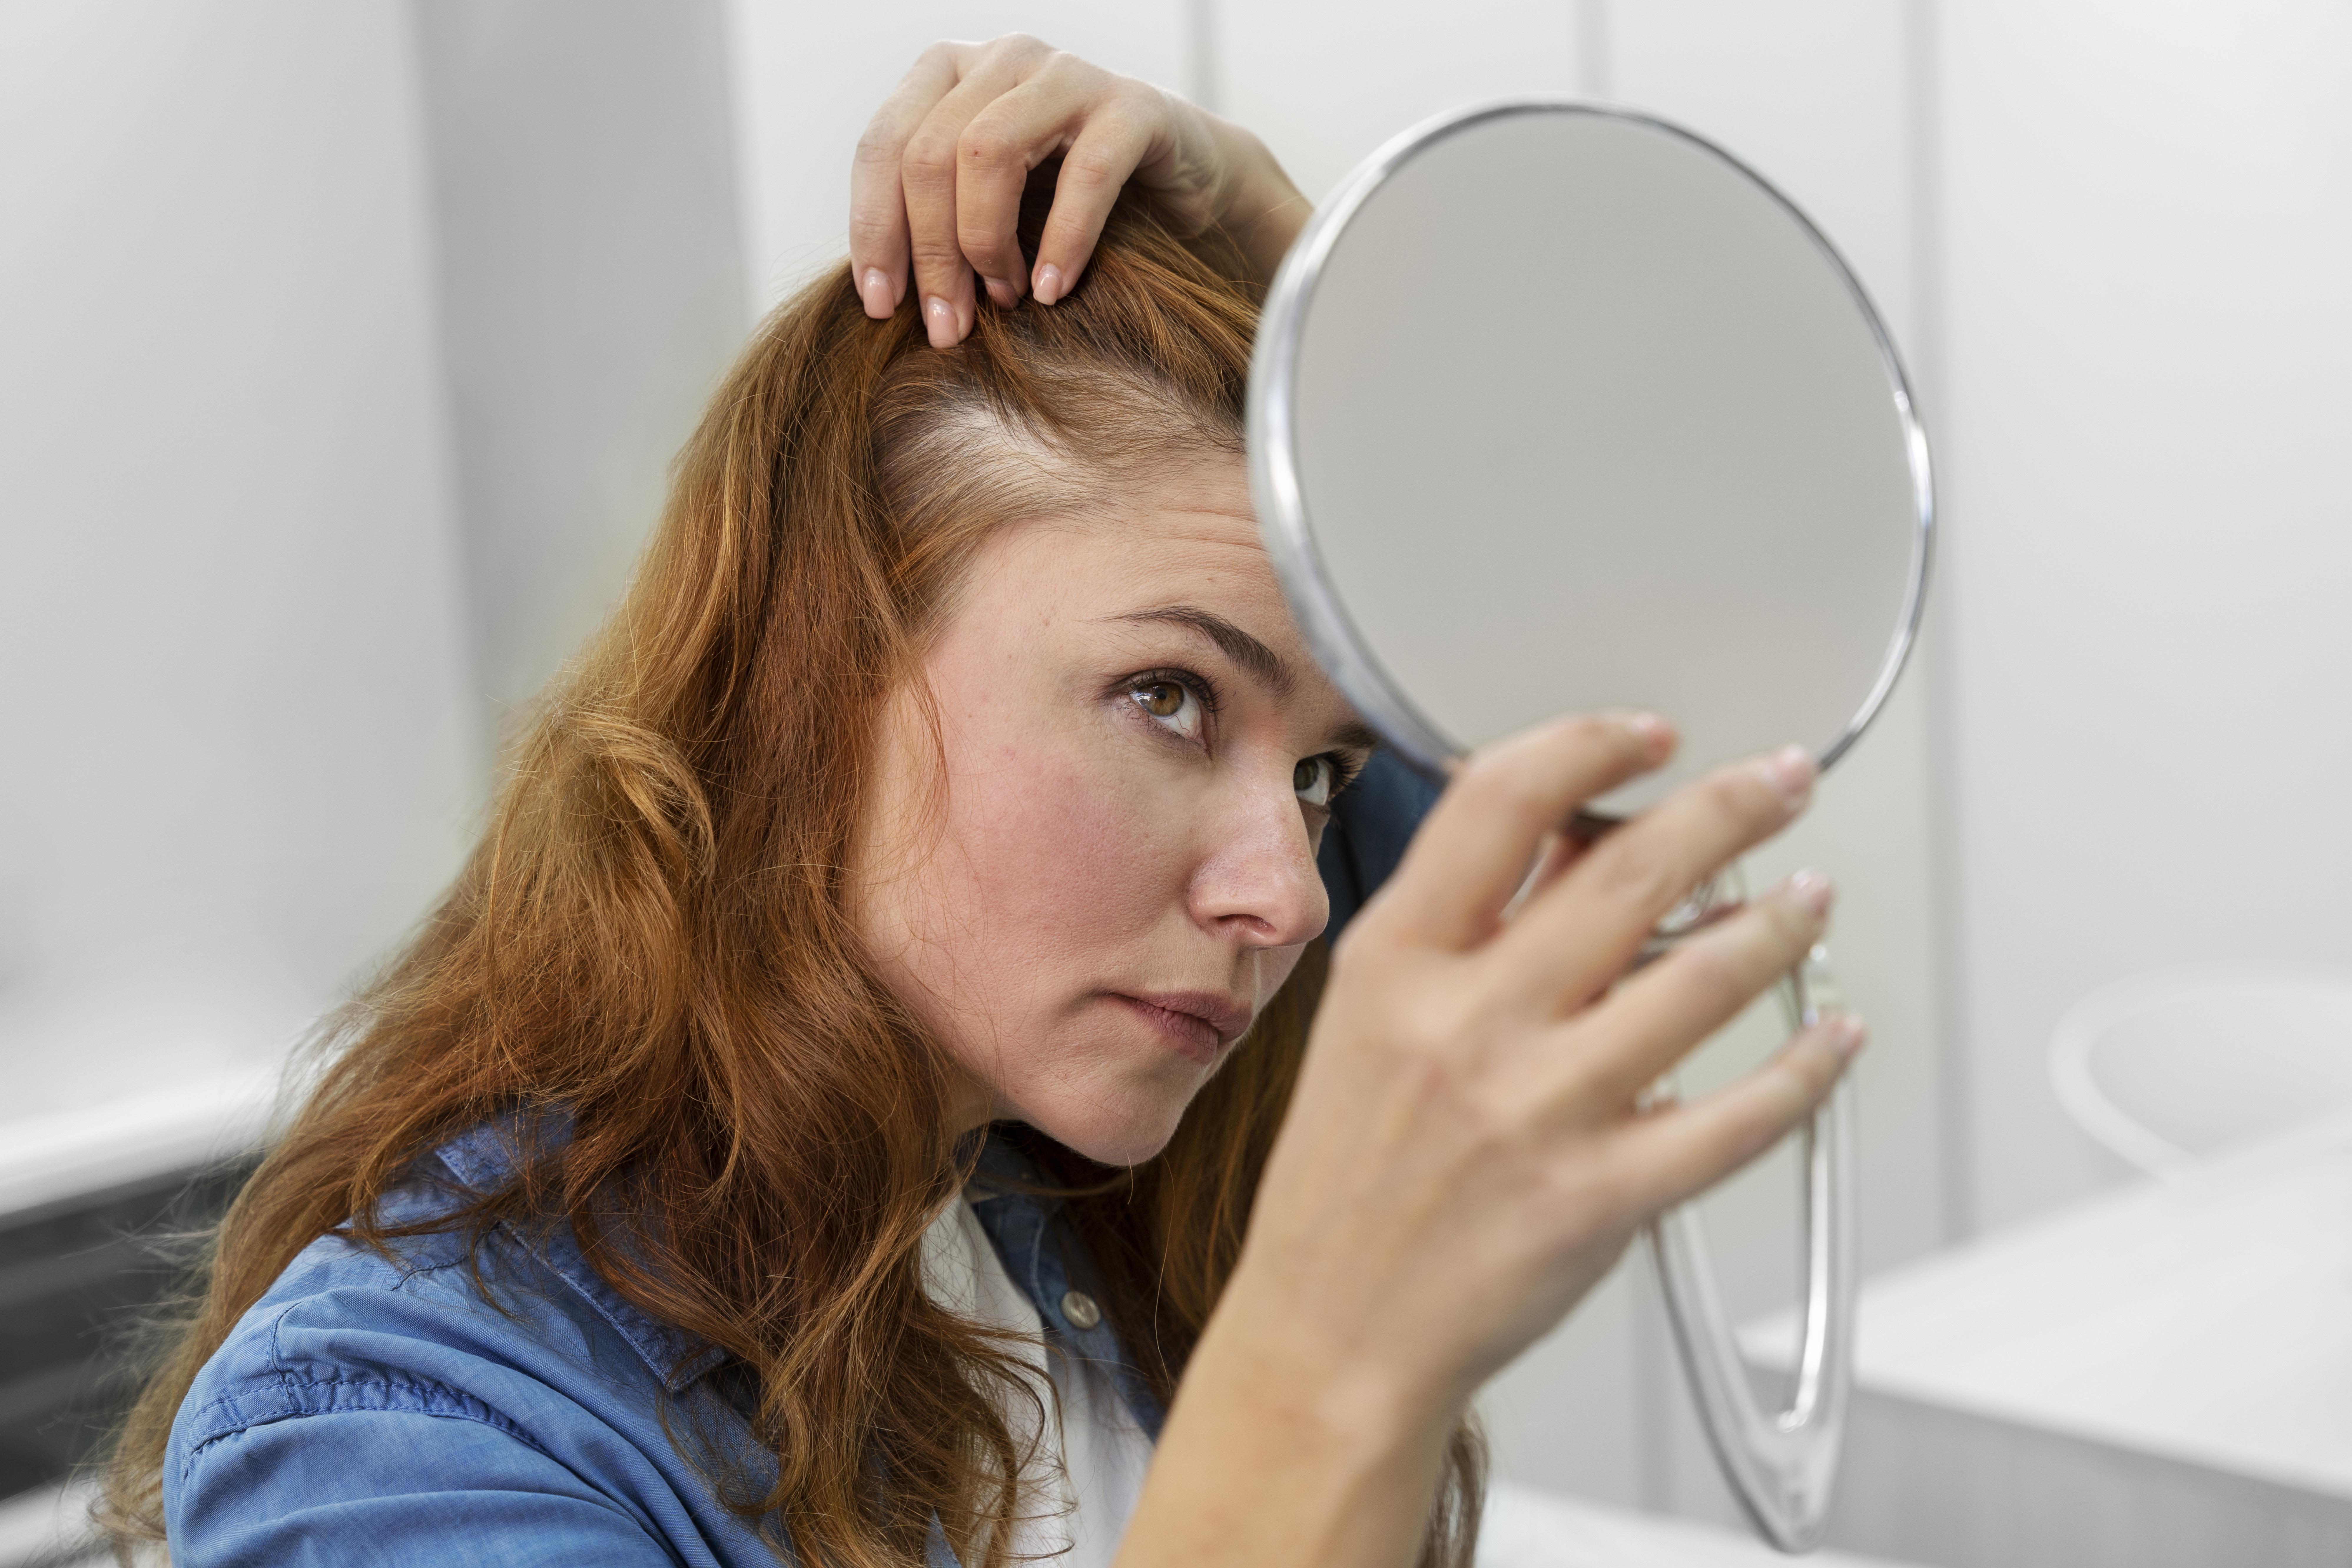 Трихолог Дорош: Основной причиной выпадения волос является наследственность